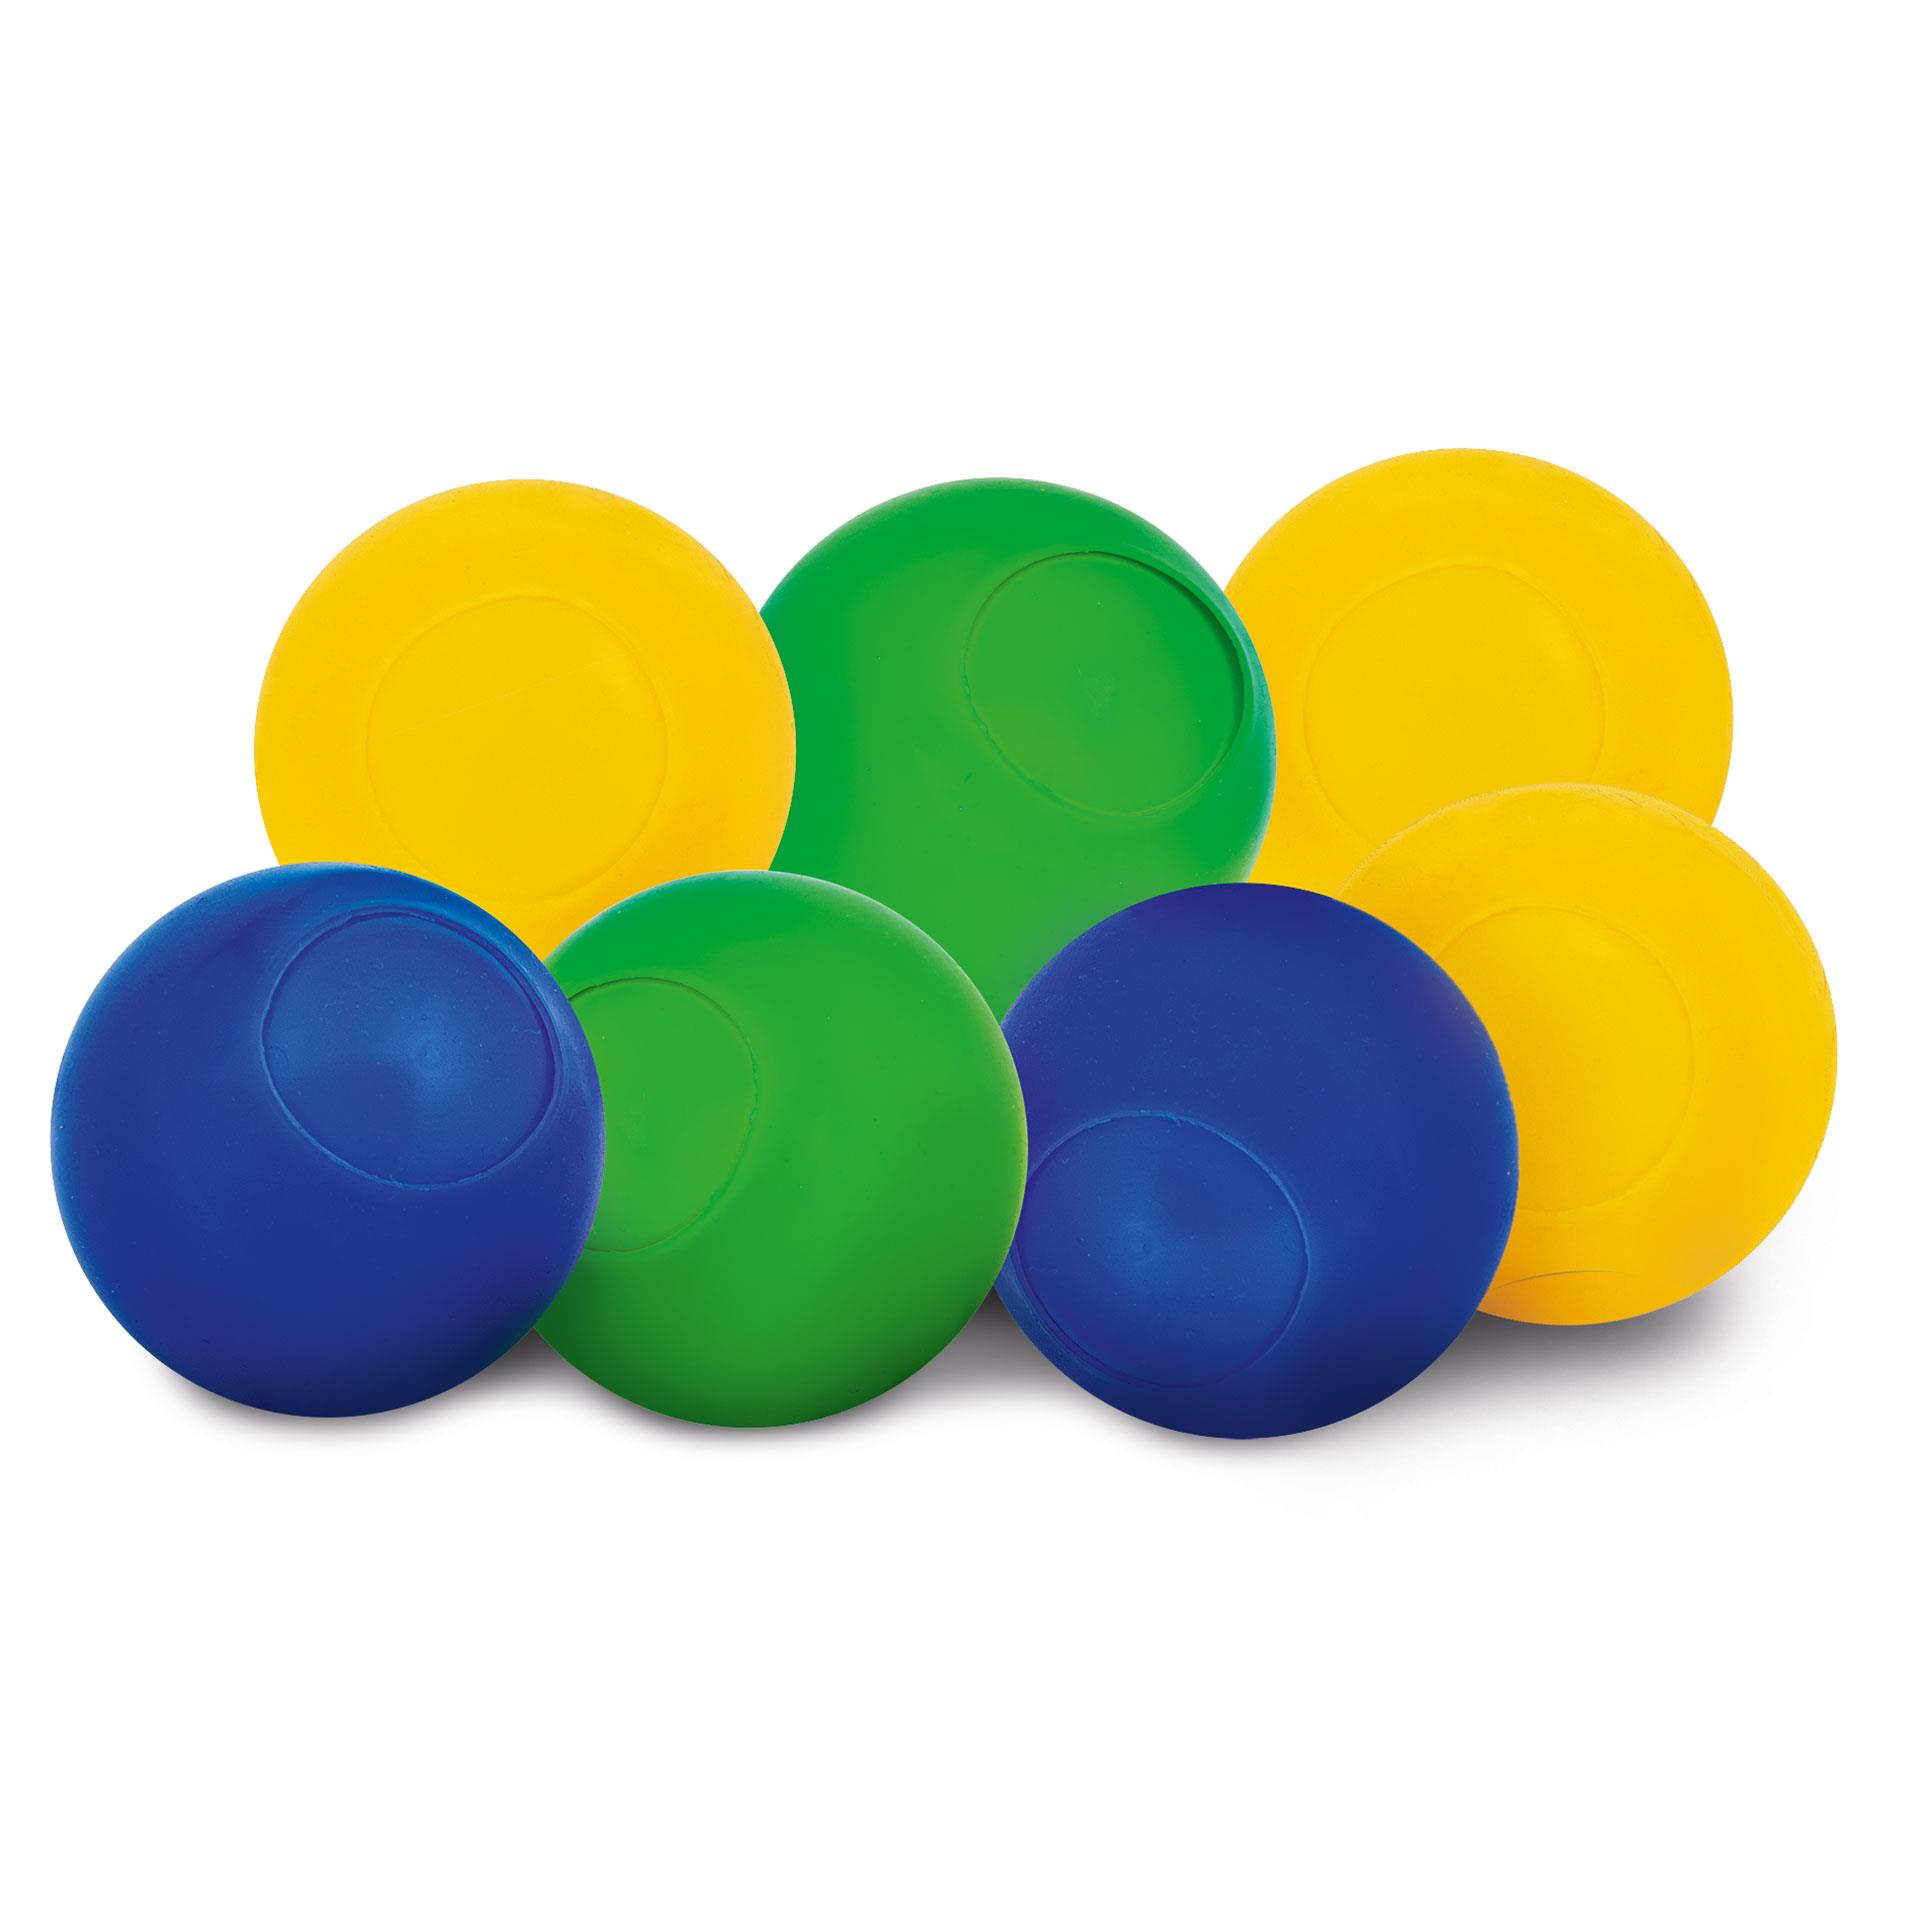 Balles à Eau Réutilisables, 30 Pcs Ballon d'eau en Peluche, Bombes à Eau  Colorés, Boules à Eclaboussures, Jouets Aquatiques pour Enfants Extérieur